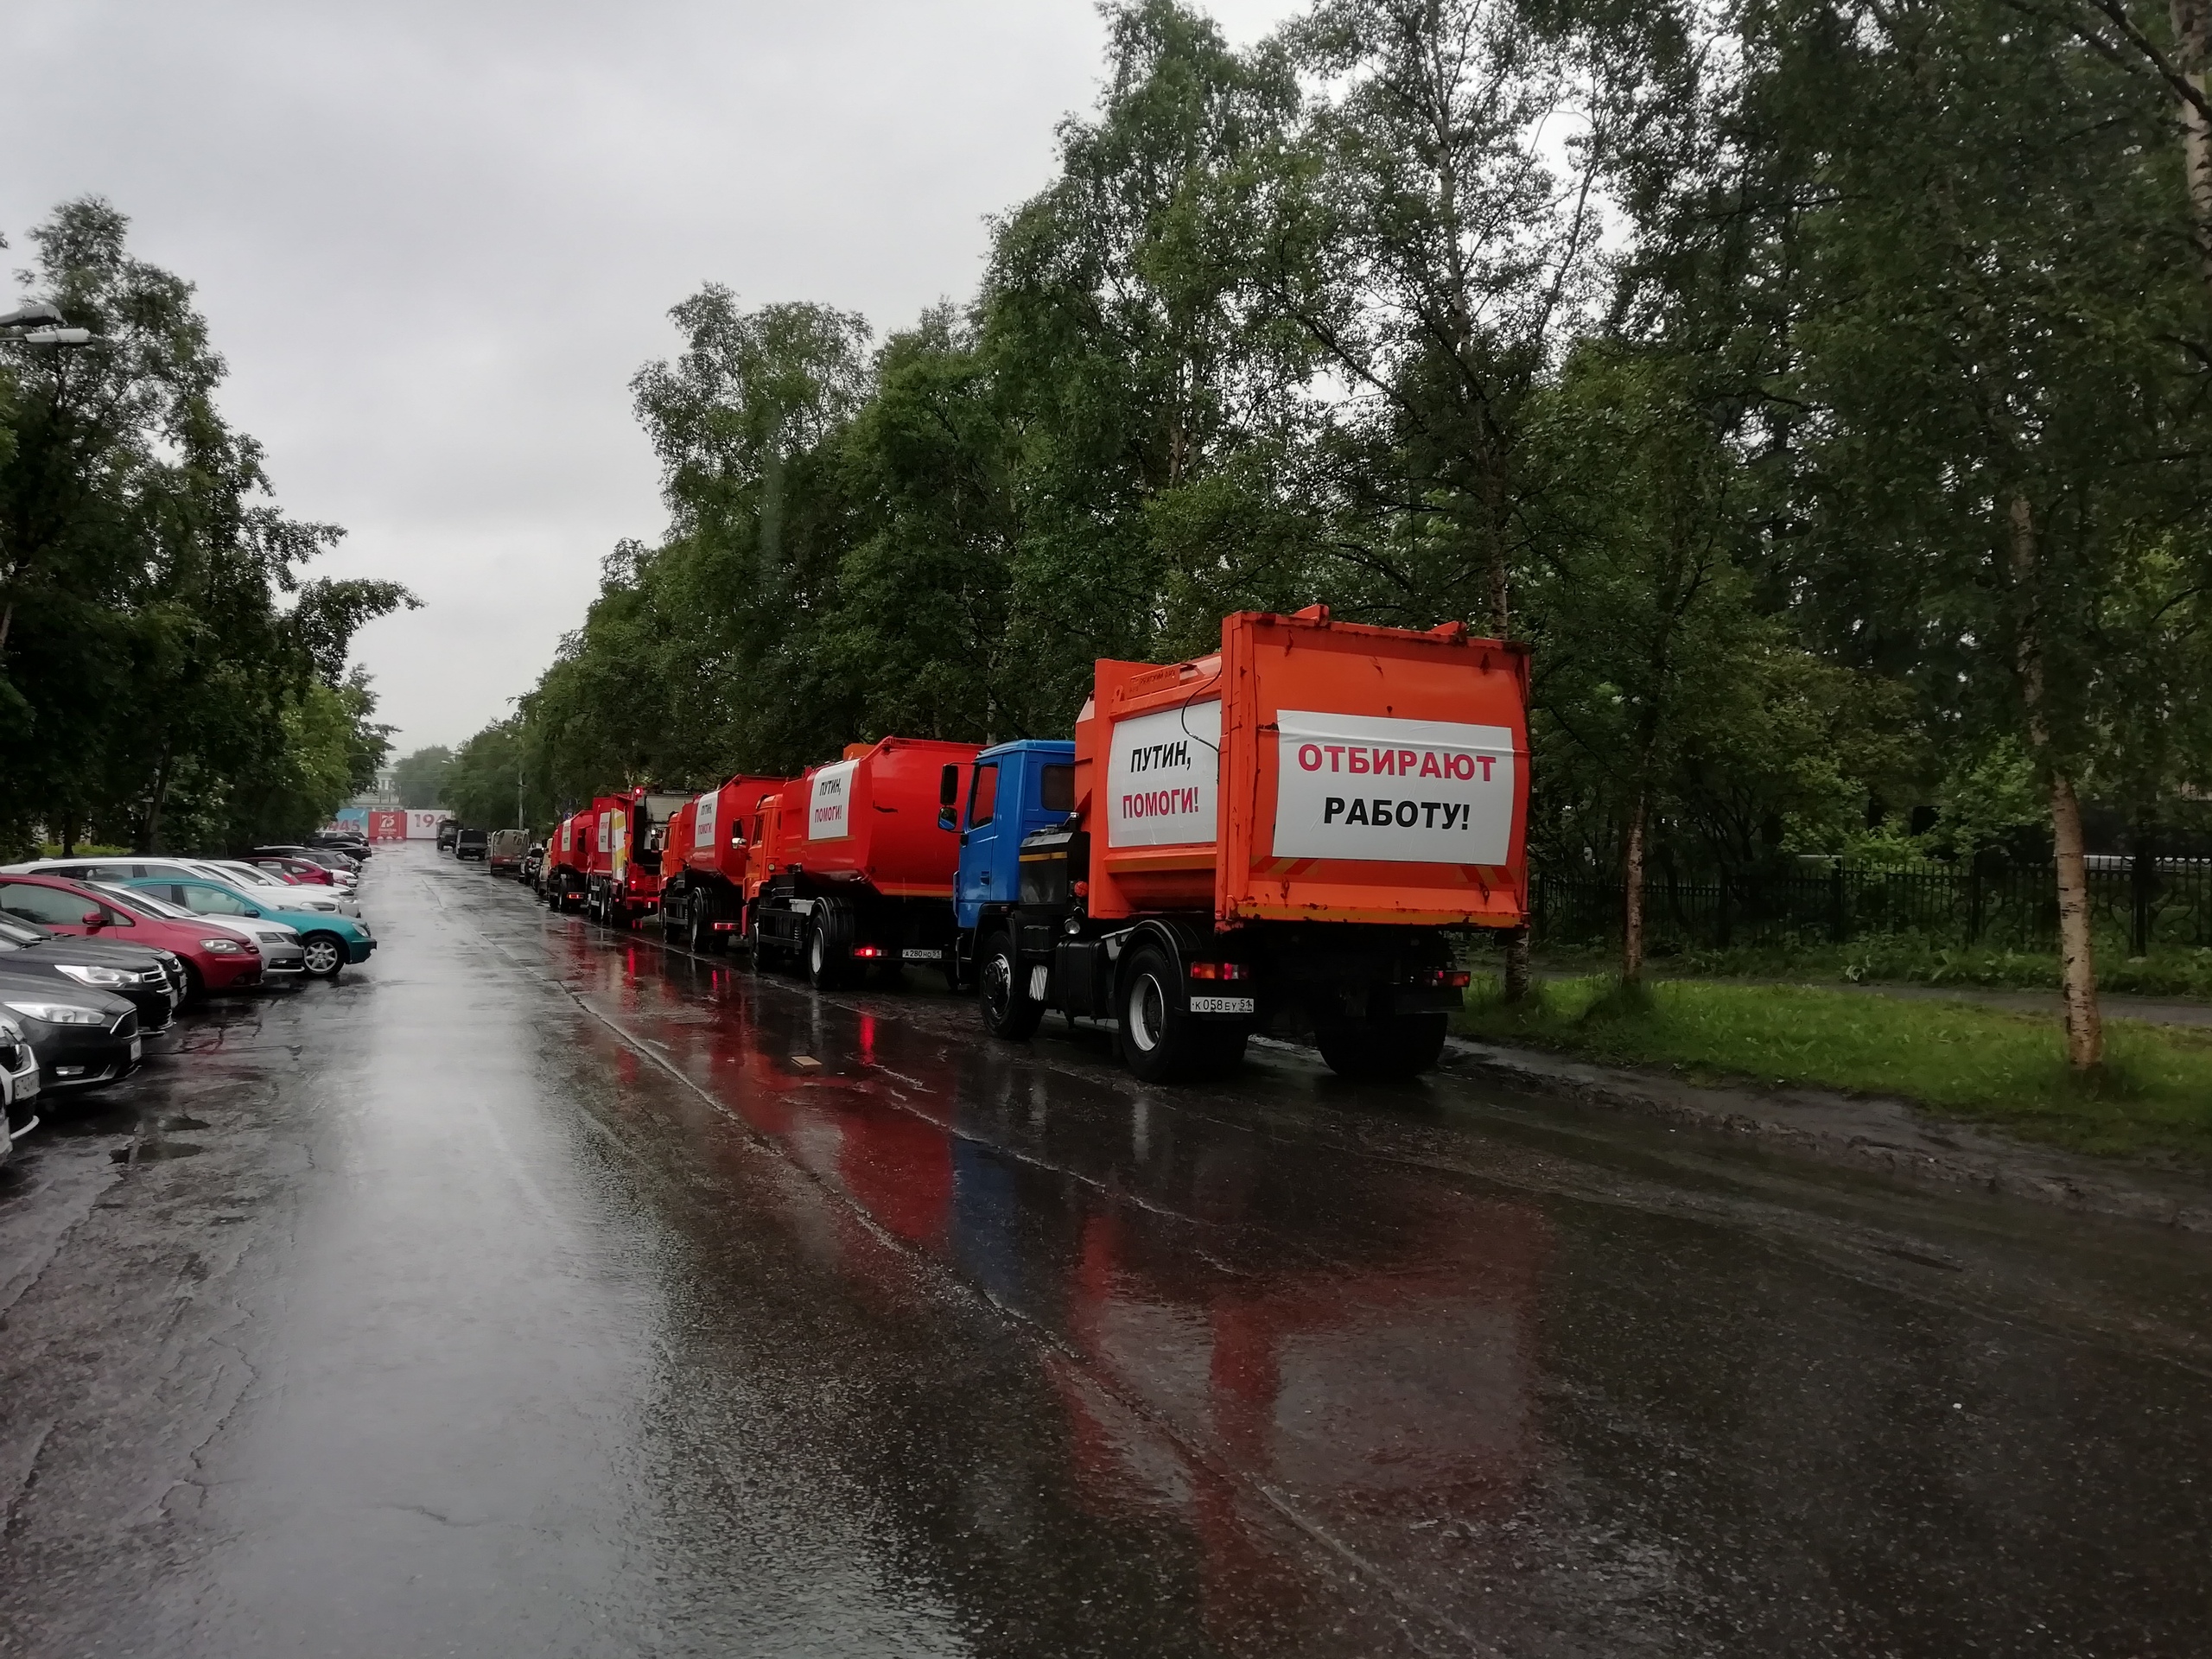 Путин, помоги!": в Мурманске протестовали водители мусоровозов